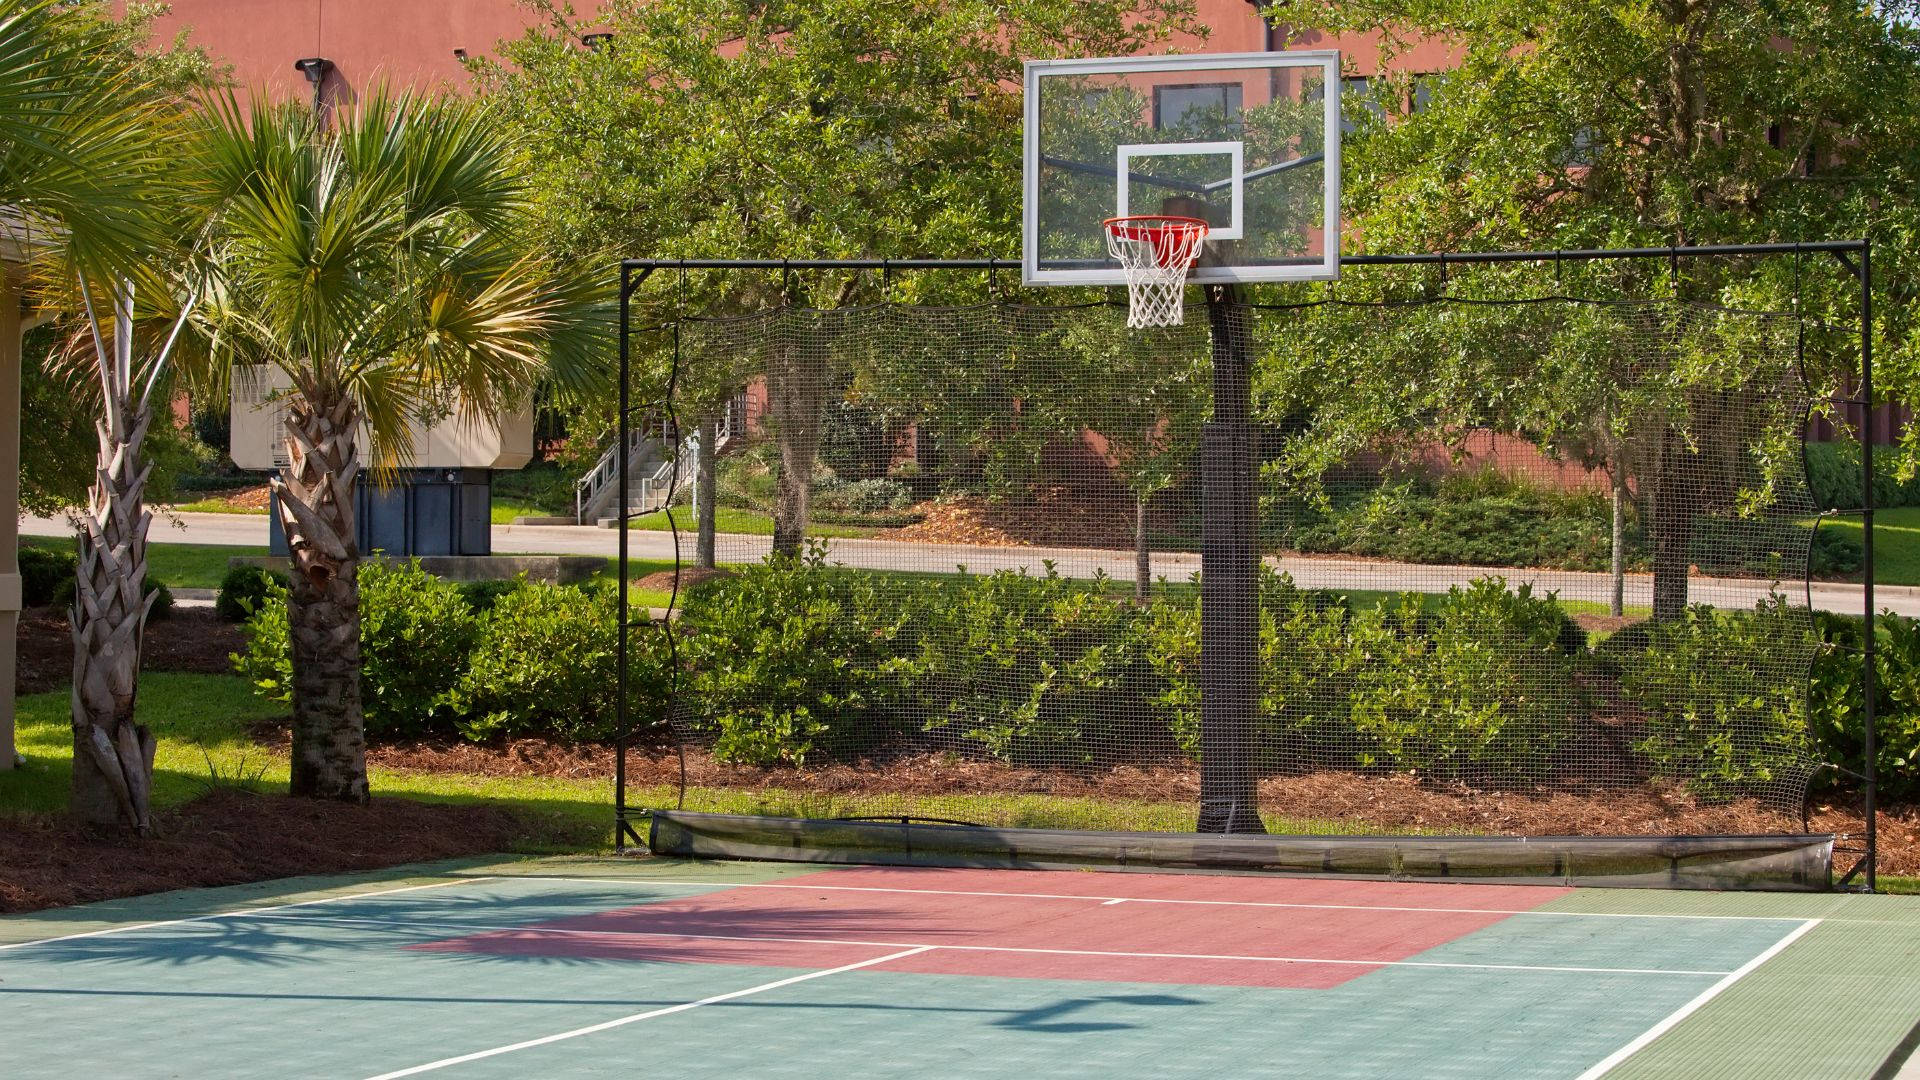 Uptown Outdoor basketball Court Wallpaper